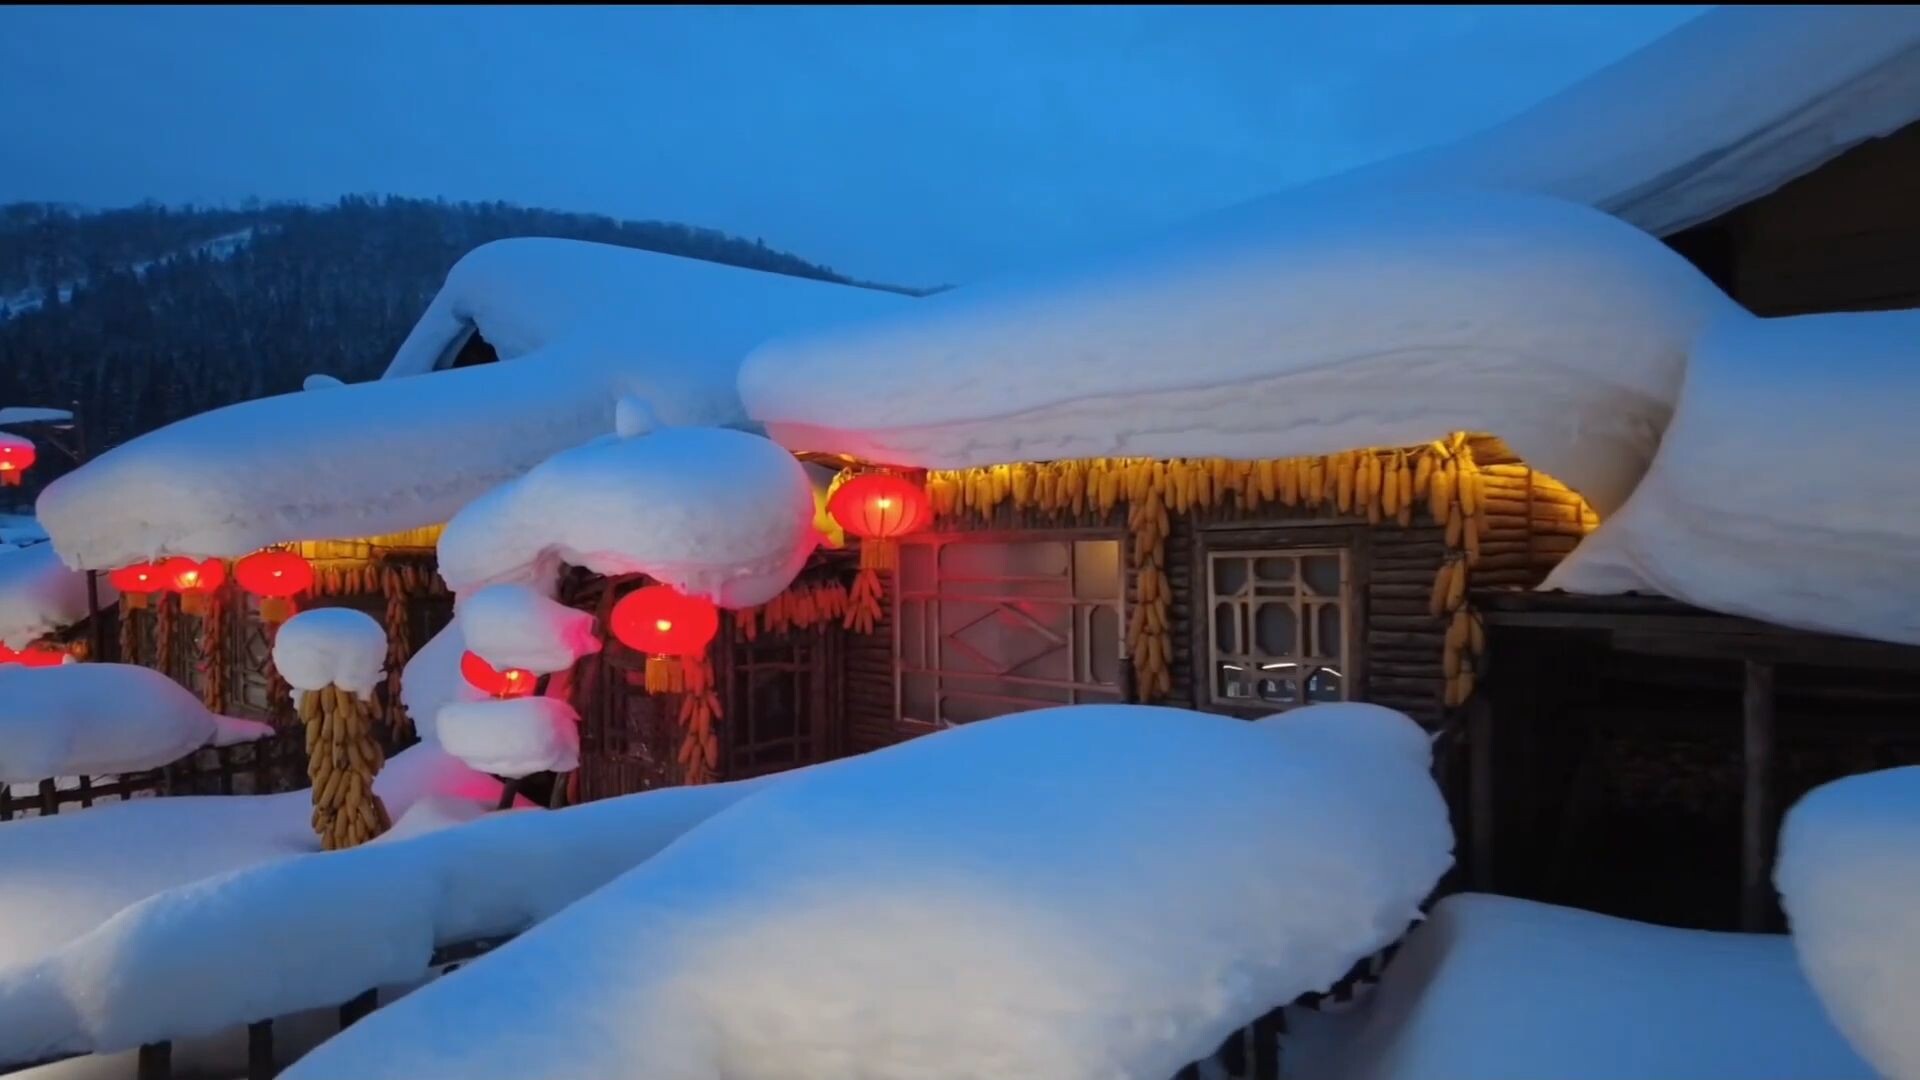 สัมผัสค่ำคืนสุดโรแมนติกกลางเมืองหิมะในเฮยหลงเจียง